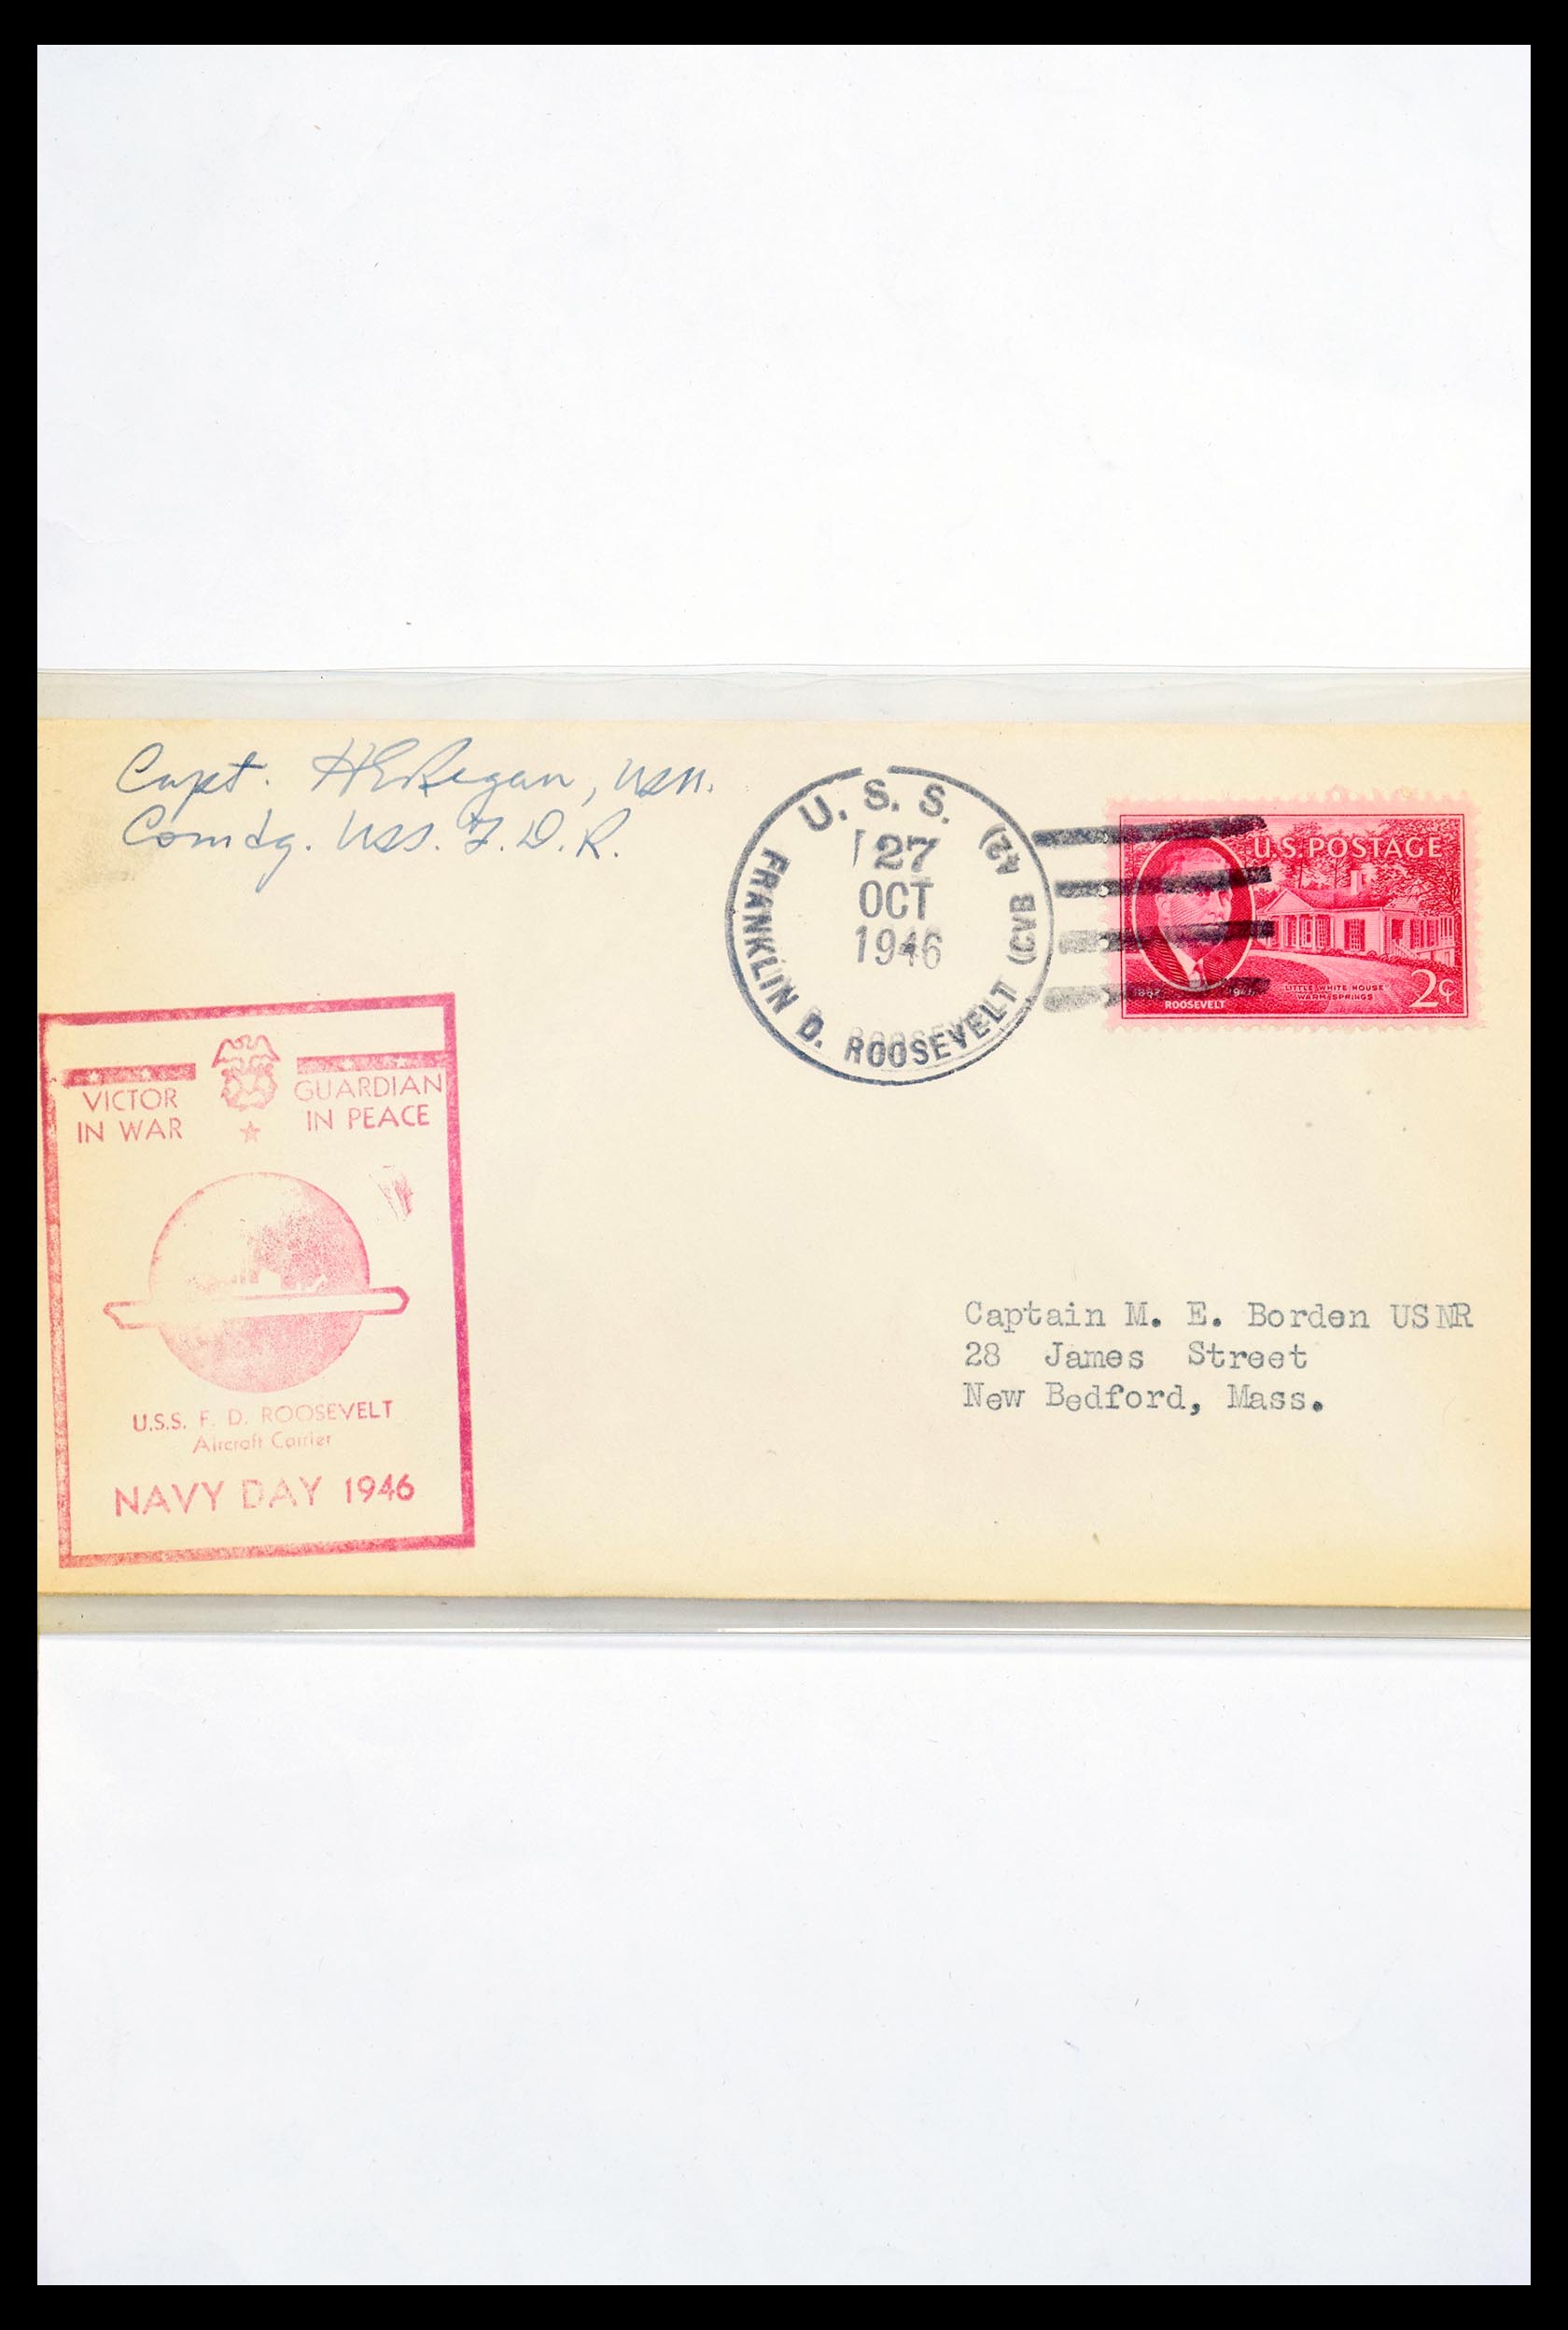 30341 310 - 30341 USA scheepspost brieven 1930-1970.